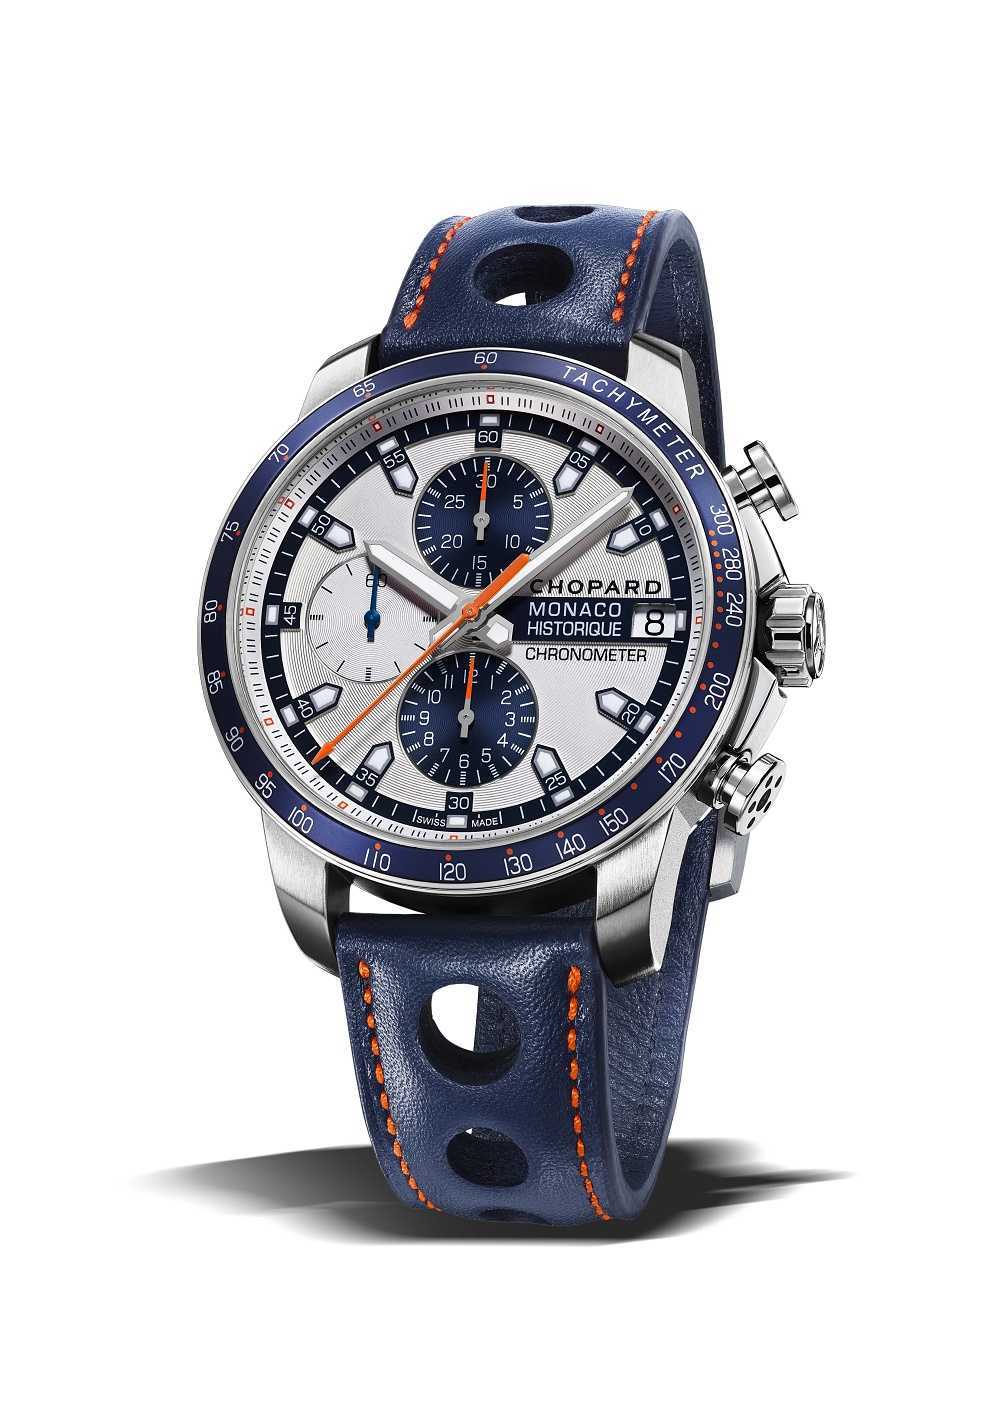 Chopard oficiální časomíra Grand Prix de Monaco GPMH 2018 Race Edition 1 | Sportovní model hodinek Chopard představen na akci Porsche